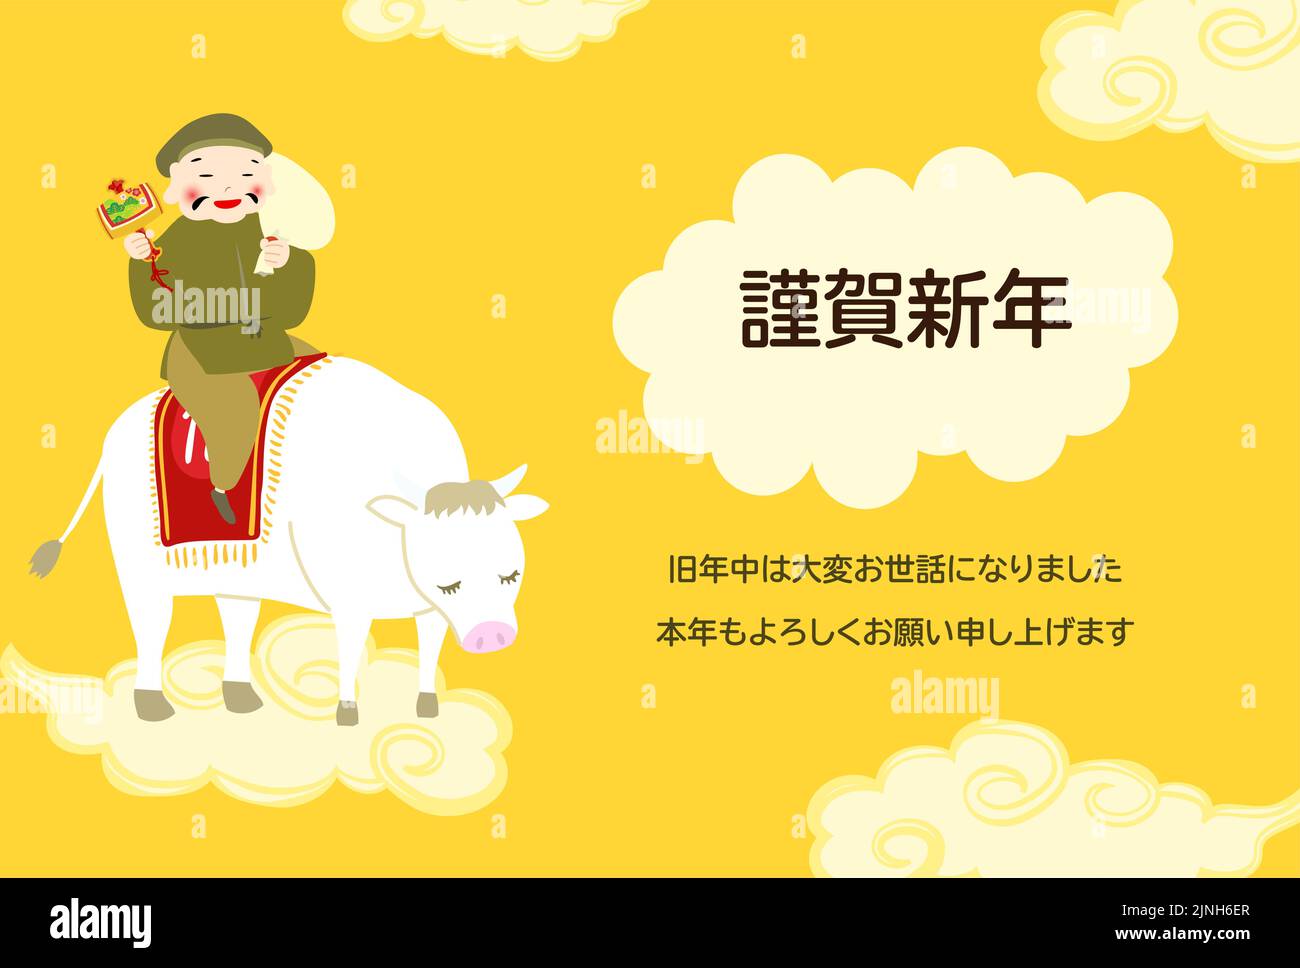 Neujahrskarte Illustration der sieben glücklichen Götter, Daikokuten auf einer weißen Kuh -Übersetzung: Glückliches Neues Jahr, vielen Dank für das letzte Jahr. Schön, yo zu treffen Stock Vektor